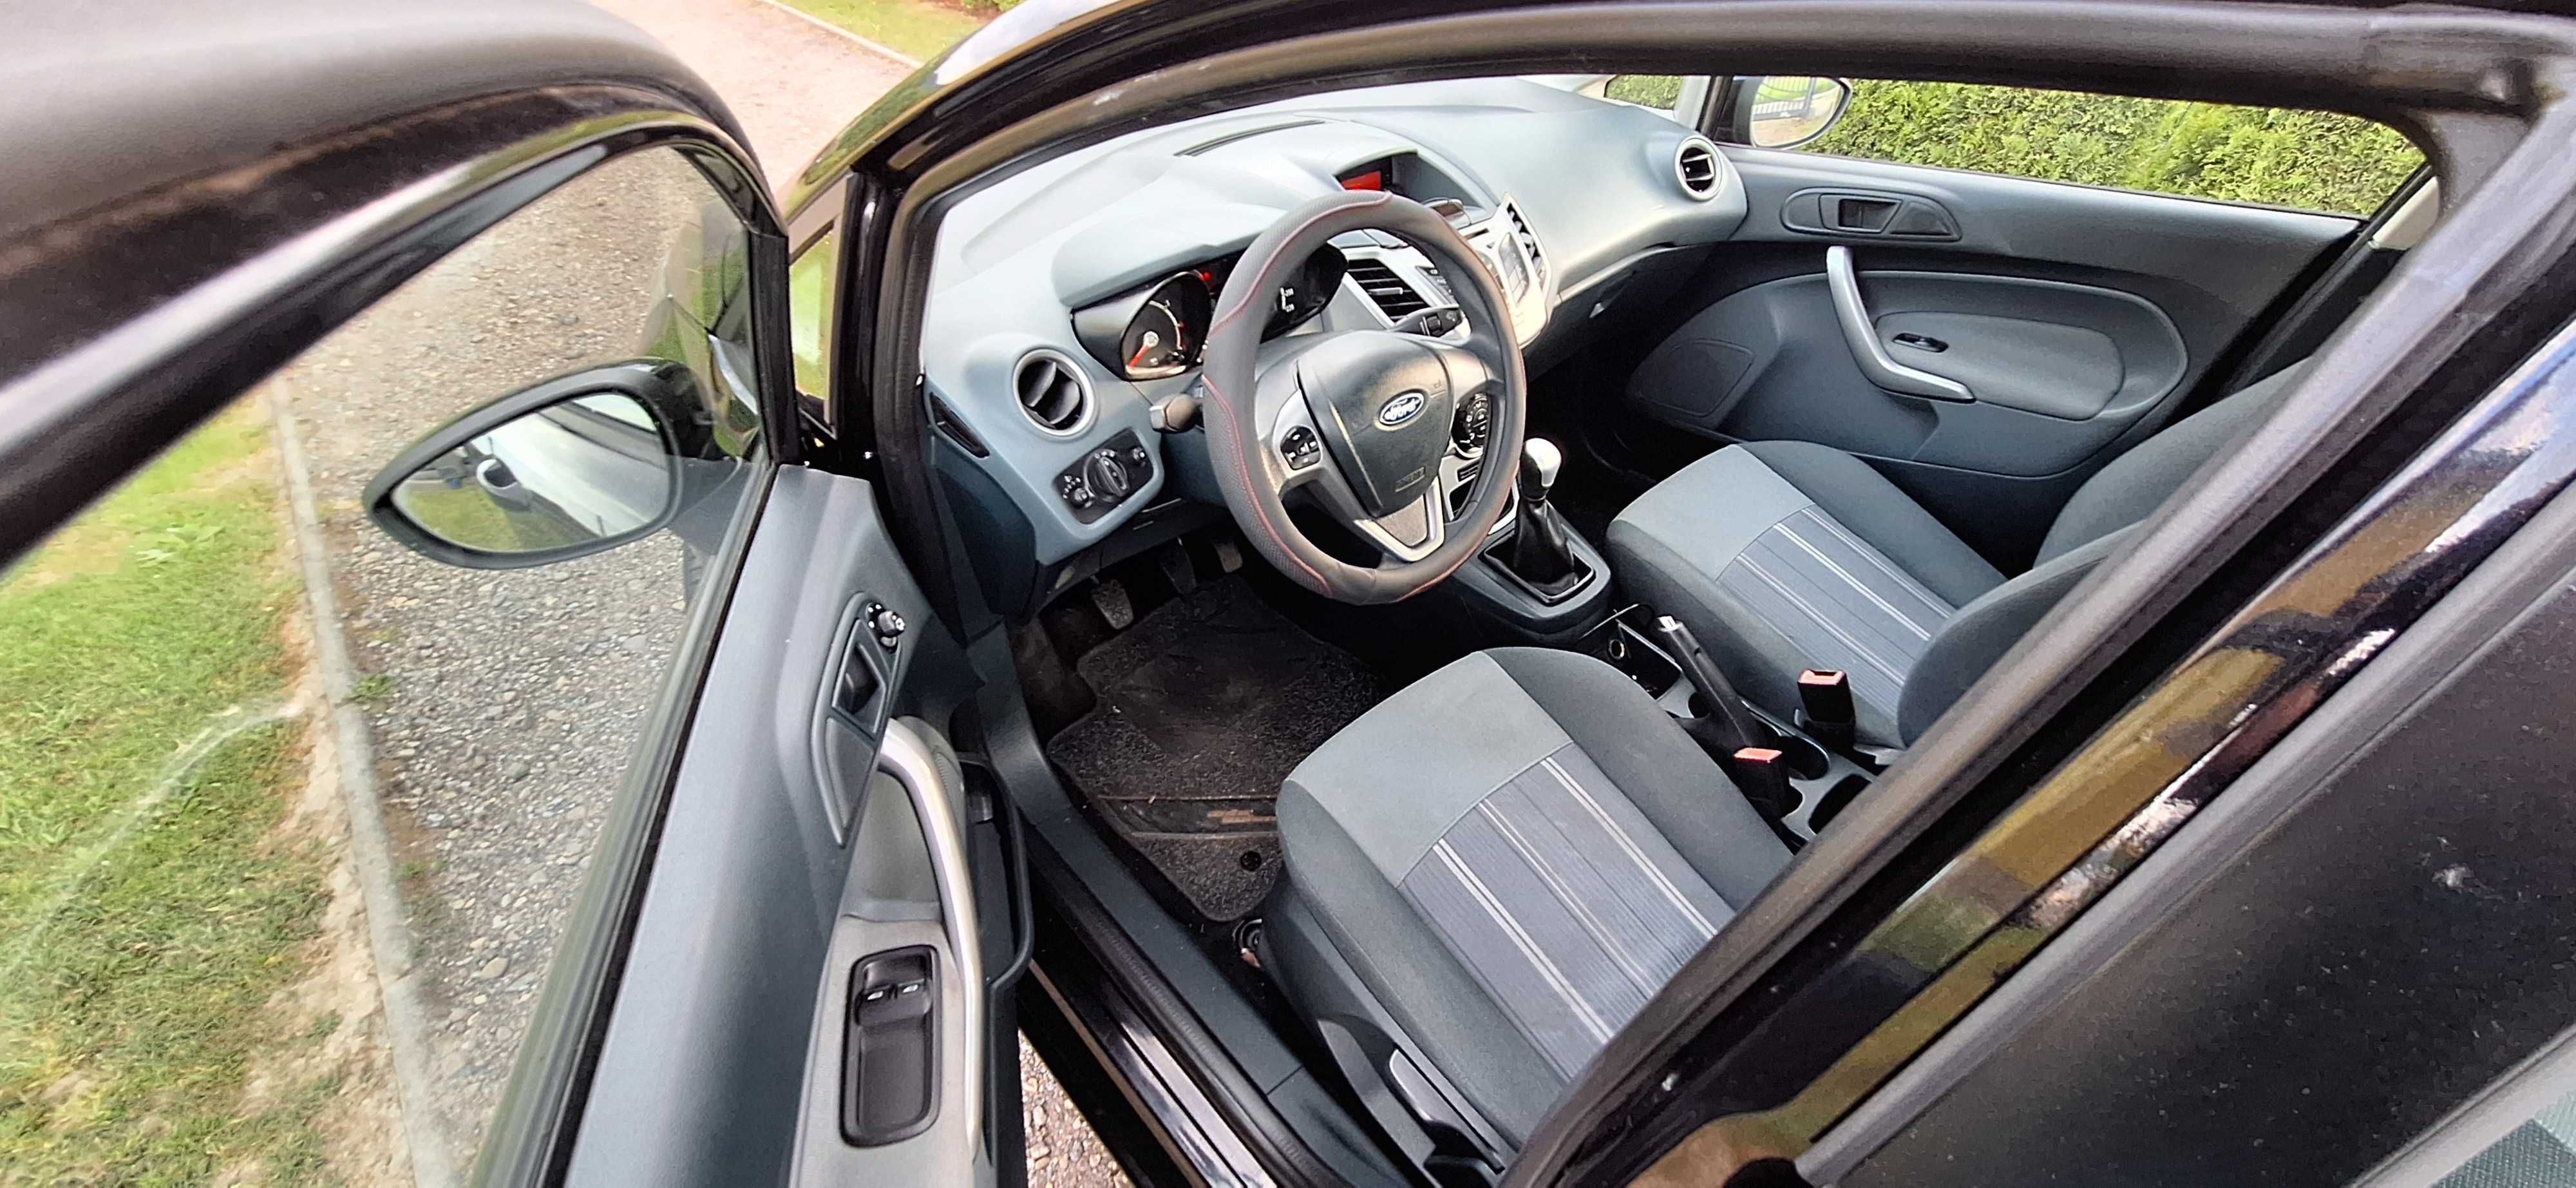 Ford Fiesta 1.25 Benzyna 121 Tyś.KM 4-DRZWI Parktronic Kamera cofania.